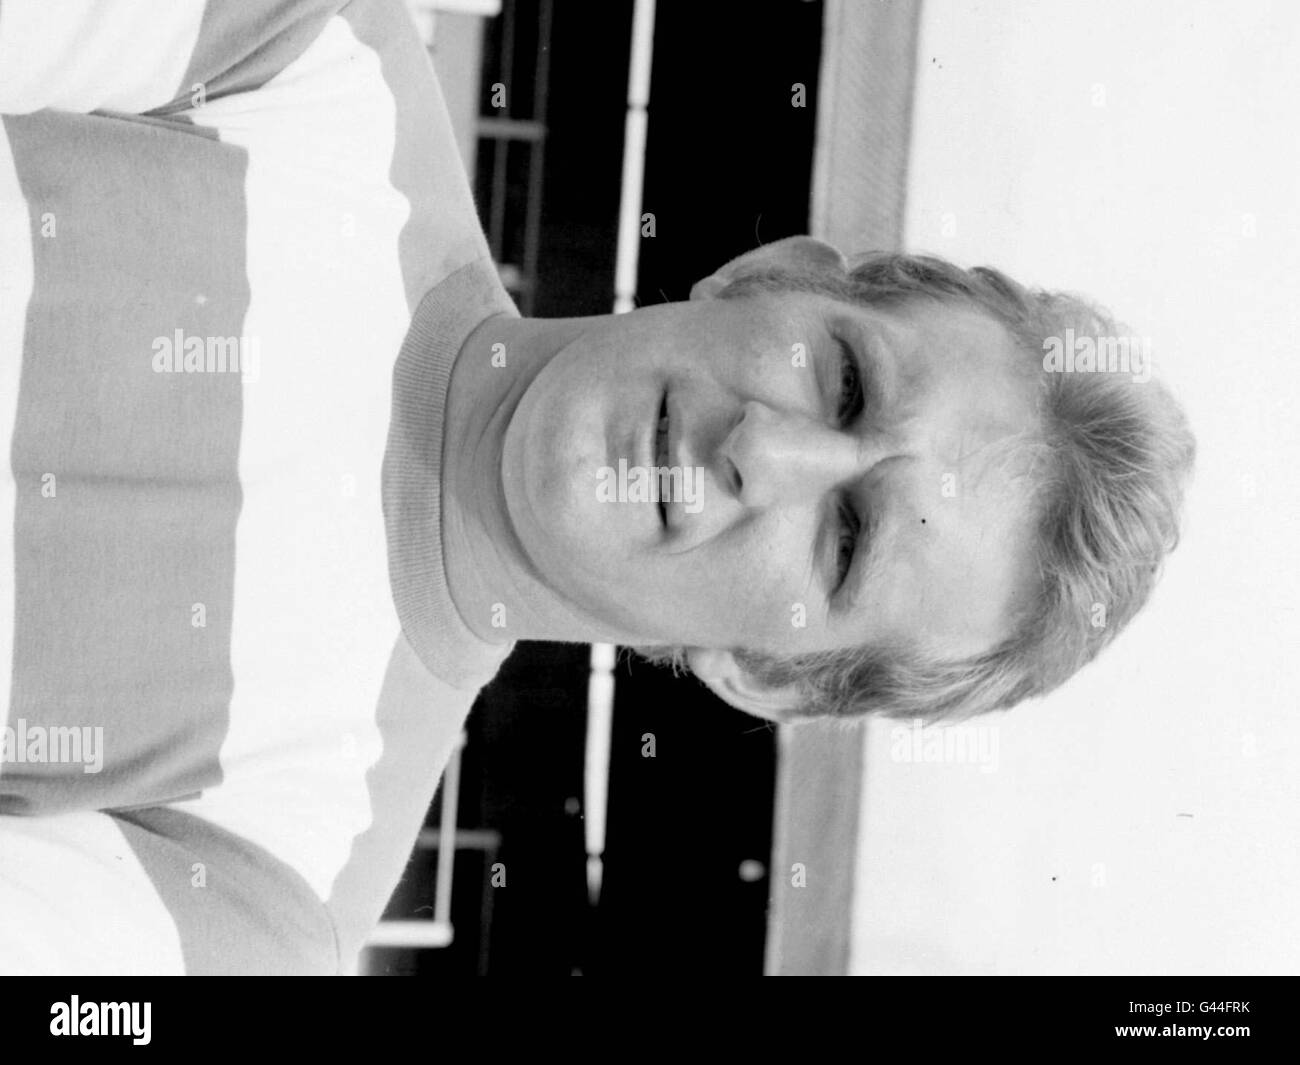 Libary Filer (130484 3 datiert 1967) der ehemaligen Fulham und Queens Park Rangers Fußball star Bobby Keetch, der im Alter von 54 Jahren starb letzte Nacht (SA) nach einem Schlaganfall. Die bunte Verteidiger war vor kurzem die treibende Kraft hinter der Öffnung der unter dem Motto "Fußball, Fußball" Restaurant in London. Vgl. PA Geschichte Fußball Keetch. PA. (s/w nur). Stockfoto